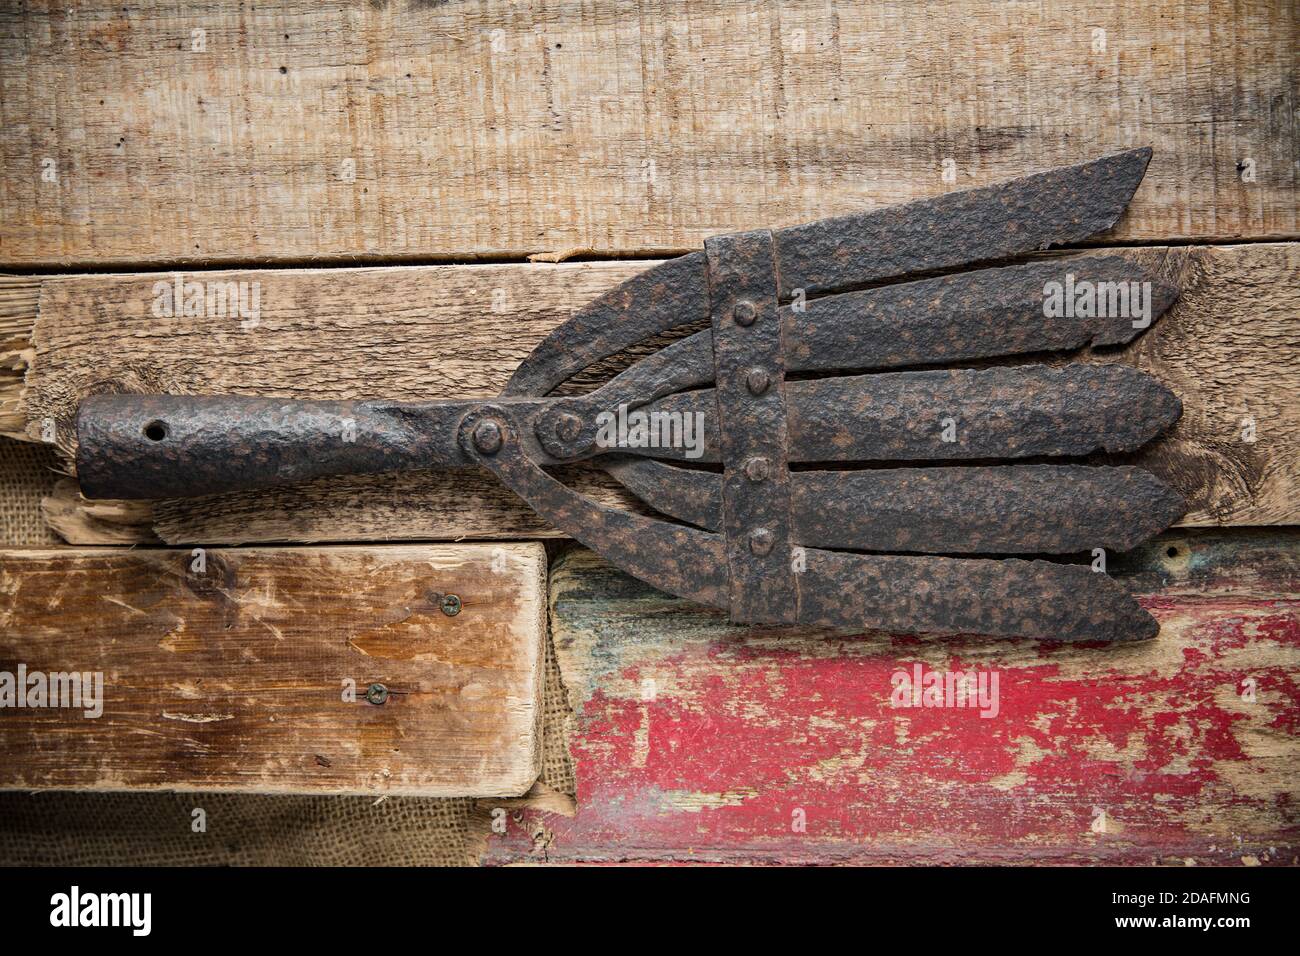 Una vecchia lancia in metallo per catturare anguilla europee, Anguilla anguilla, fotografata su sfondo ligneo. Le cesoie di anguilla erano conosciute da parecchi n Foto Stock